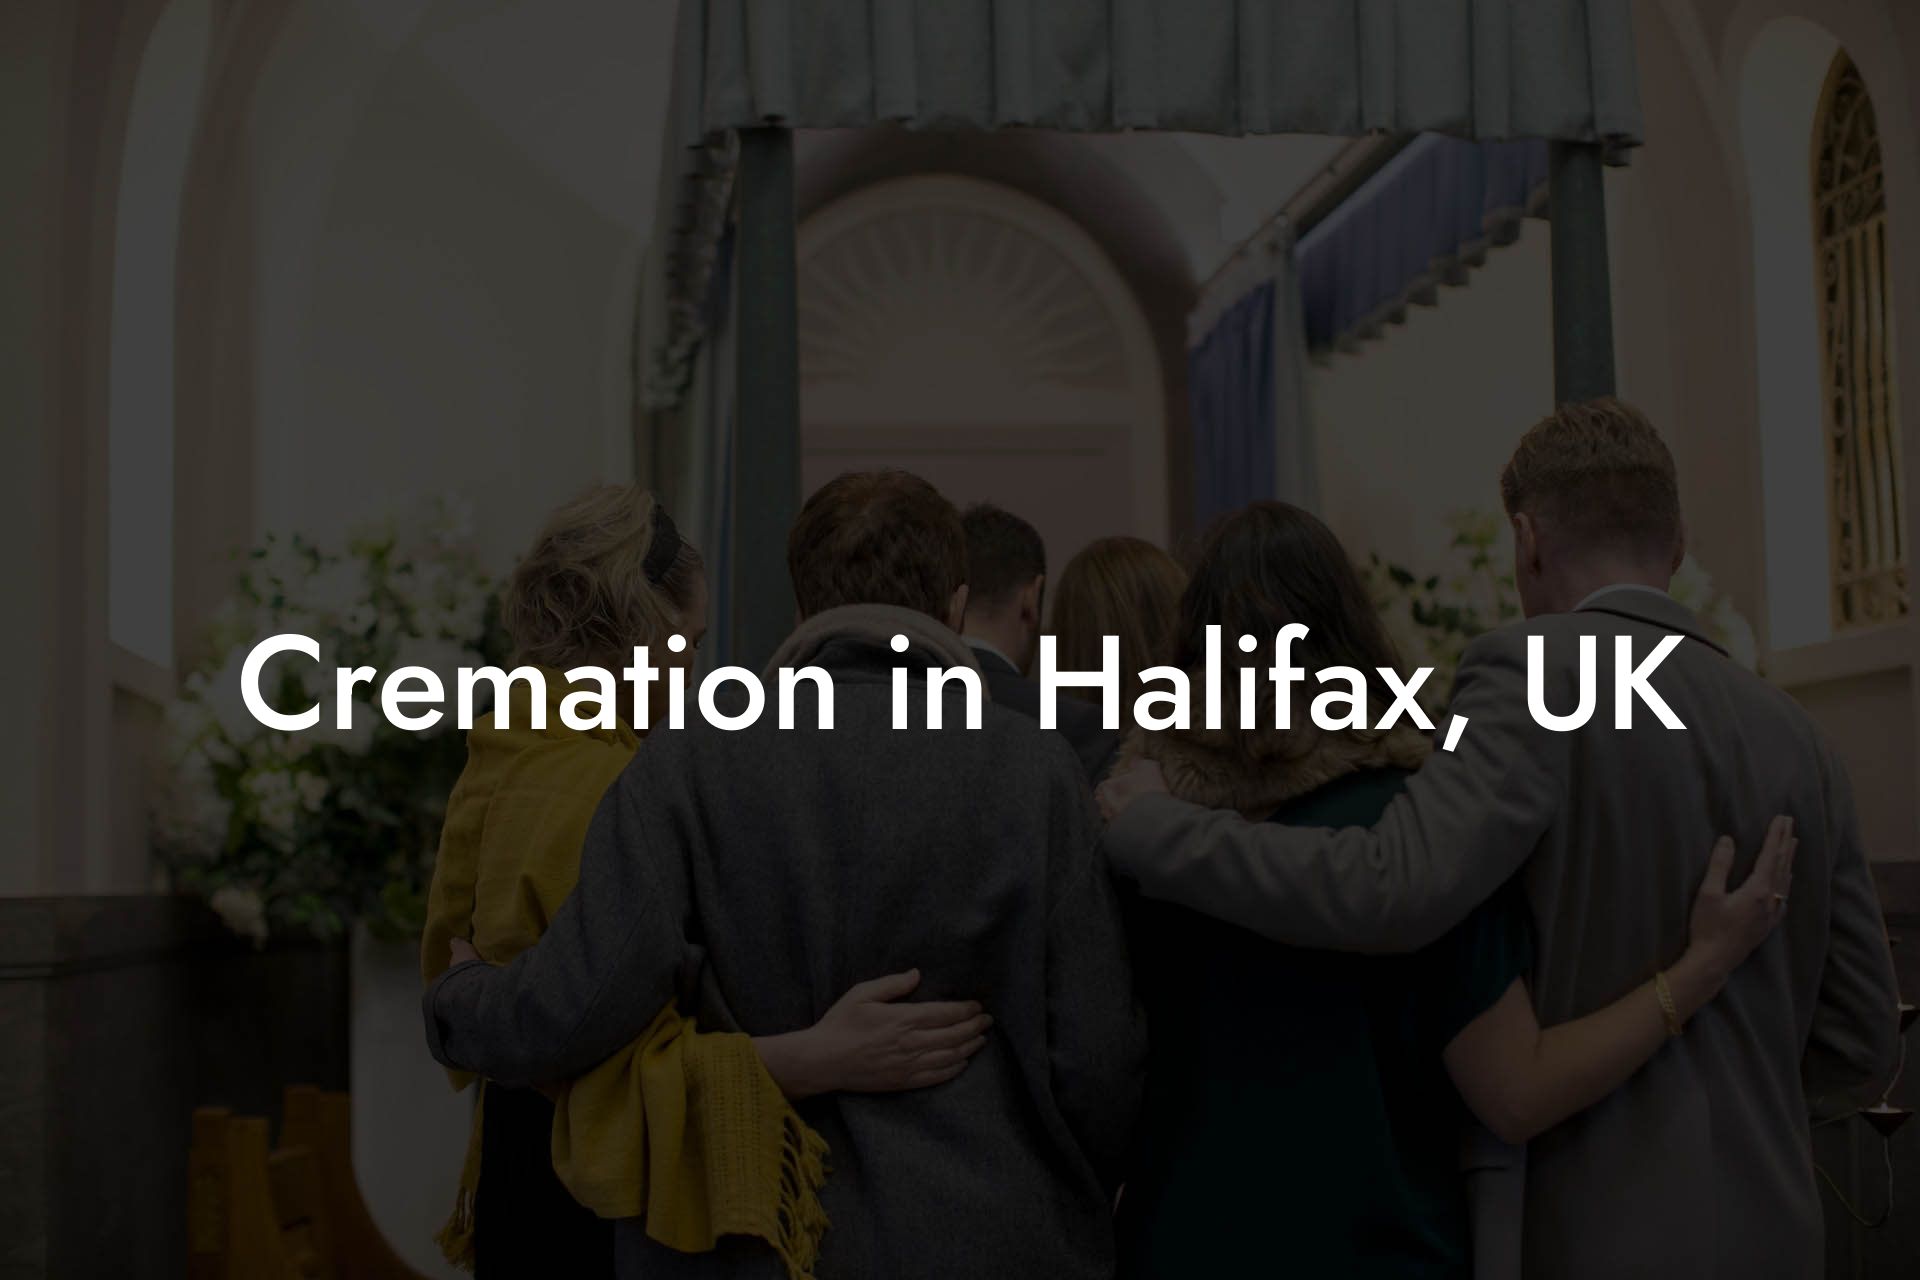 Cremation in Halifax, UK